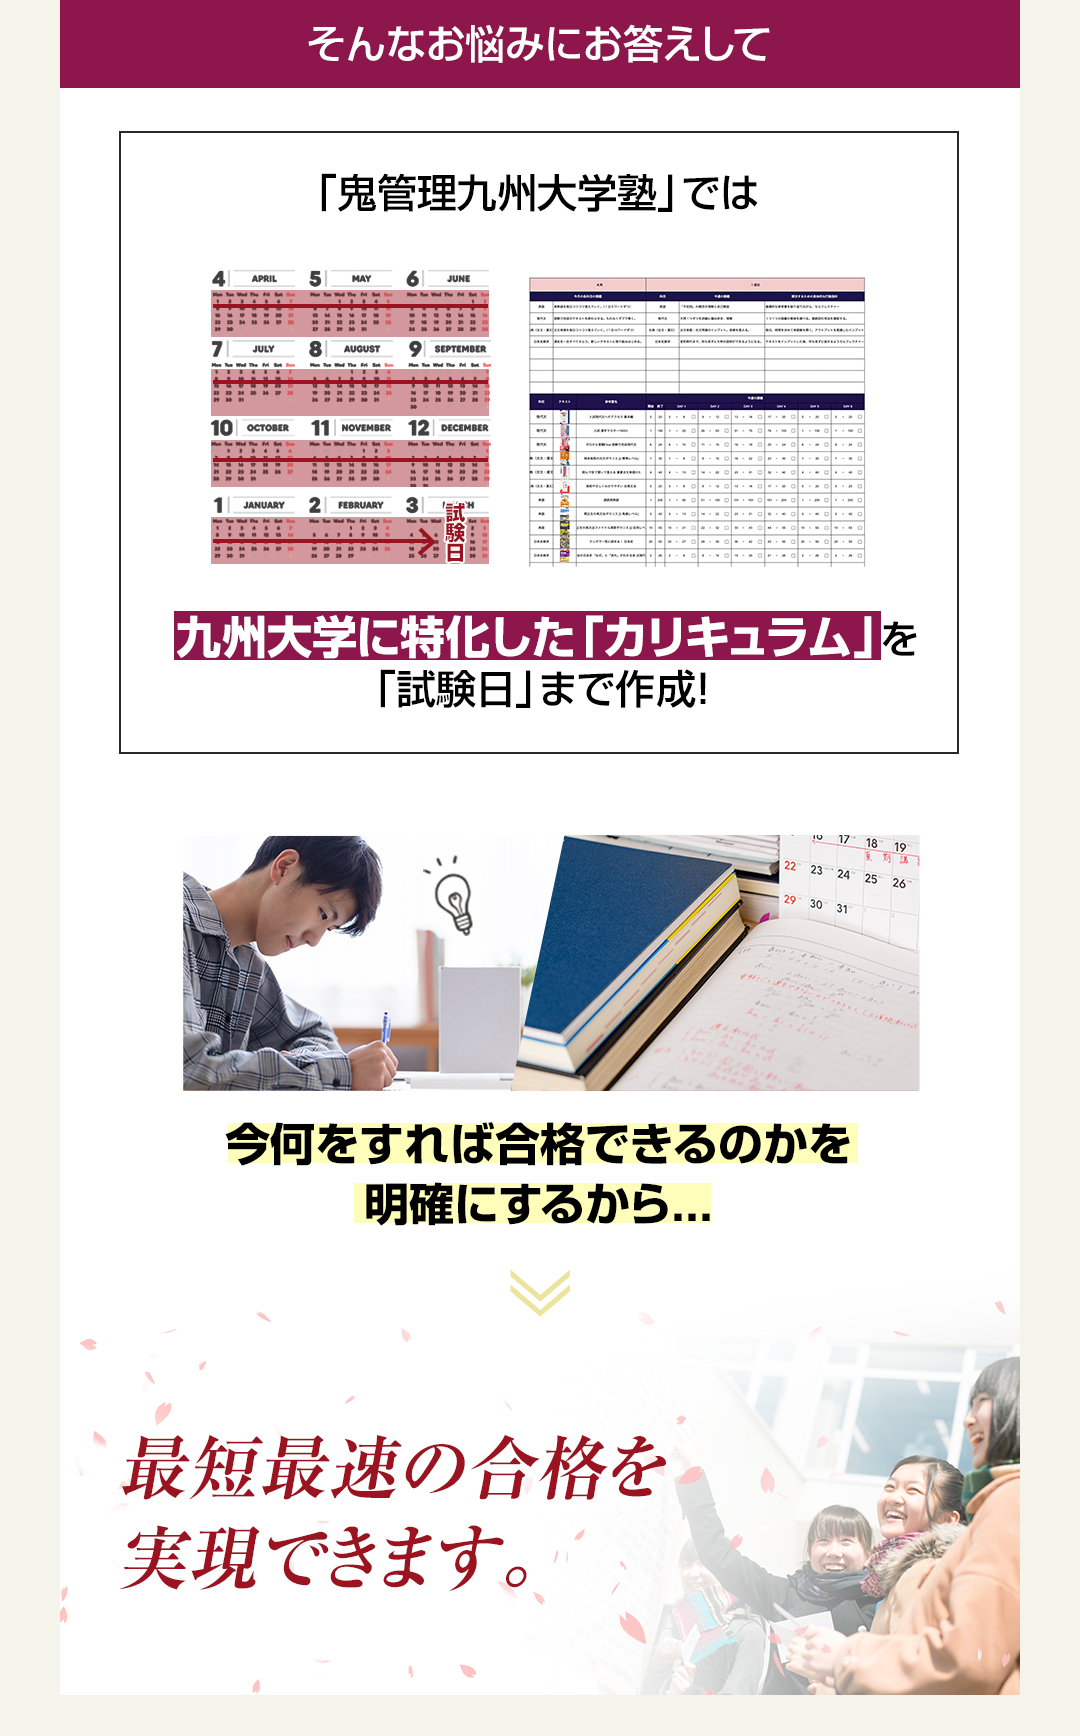 「鬼管理九州大学塾」では九州大学に特化した「カリキュラム」を「試験日」まで作成